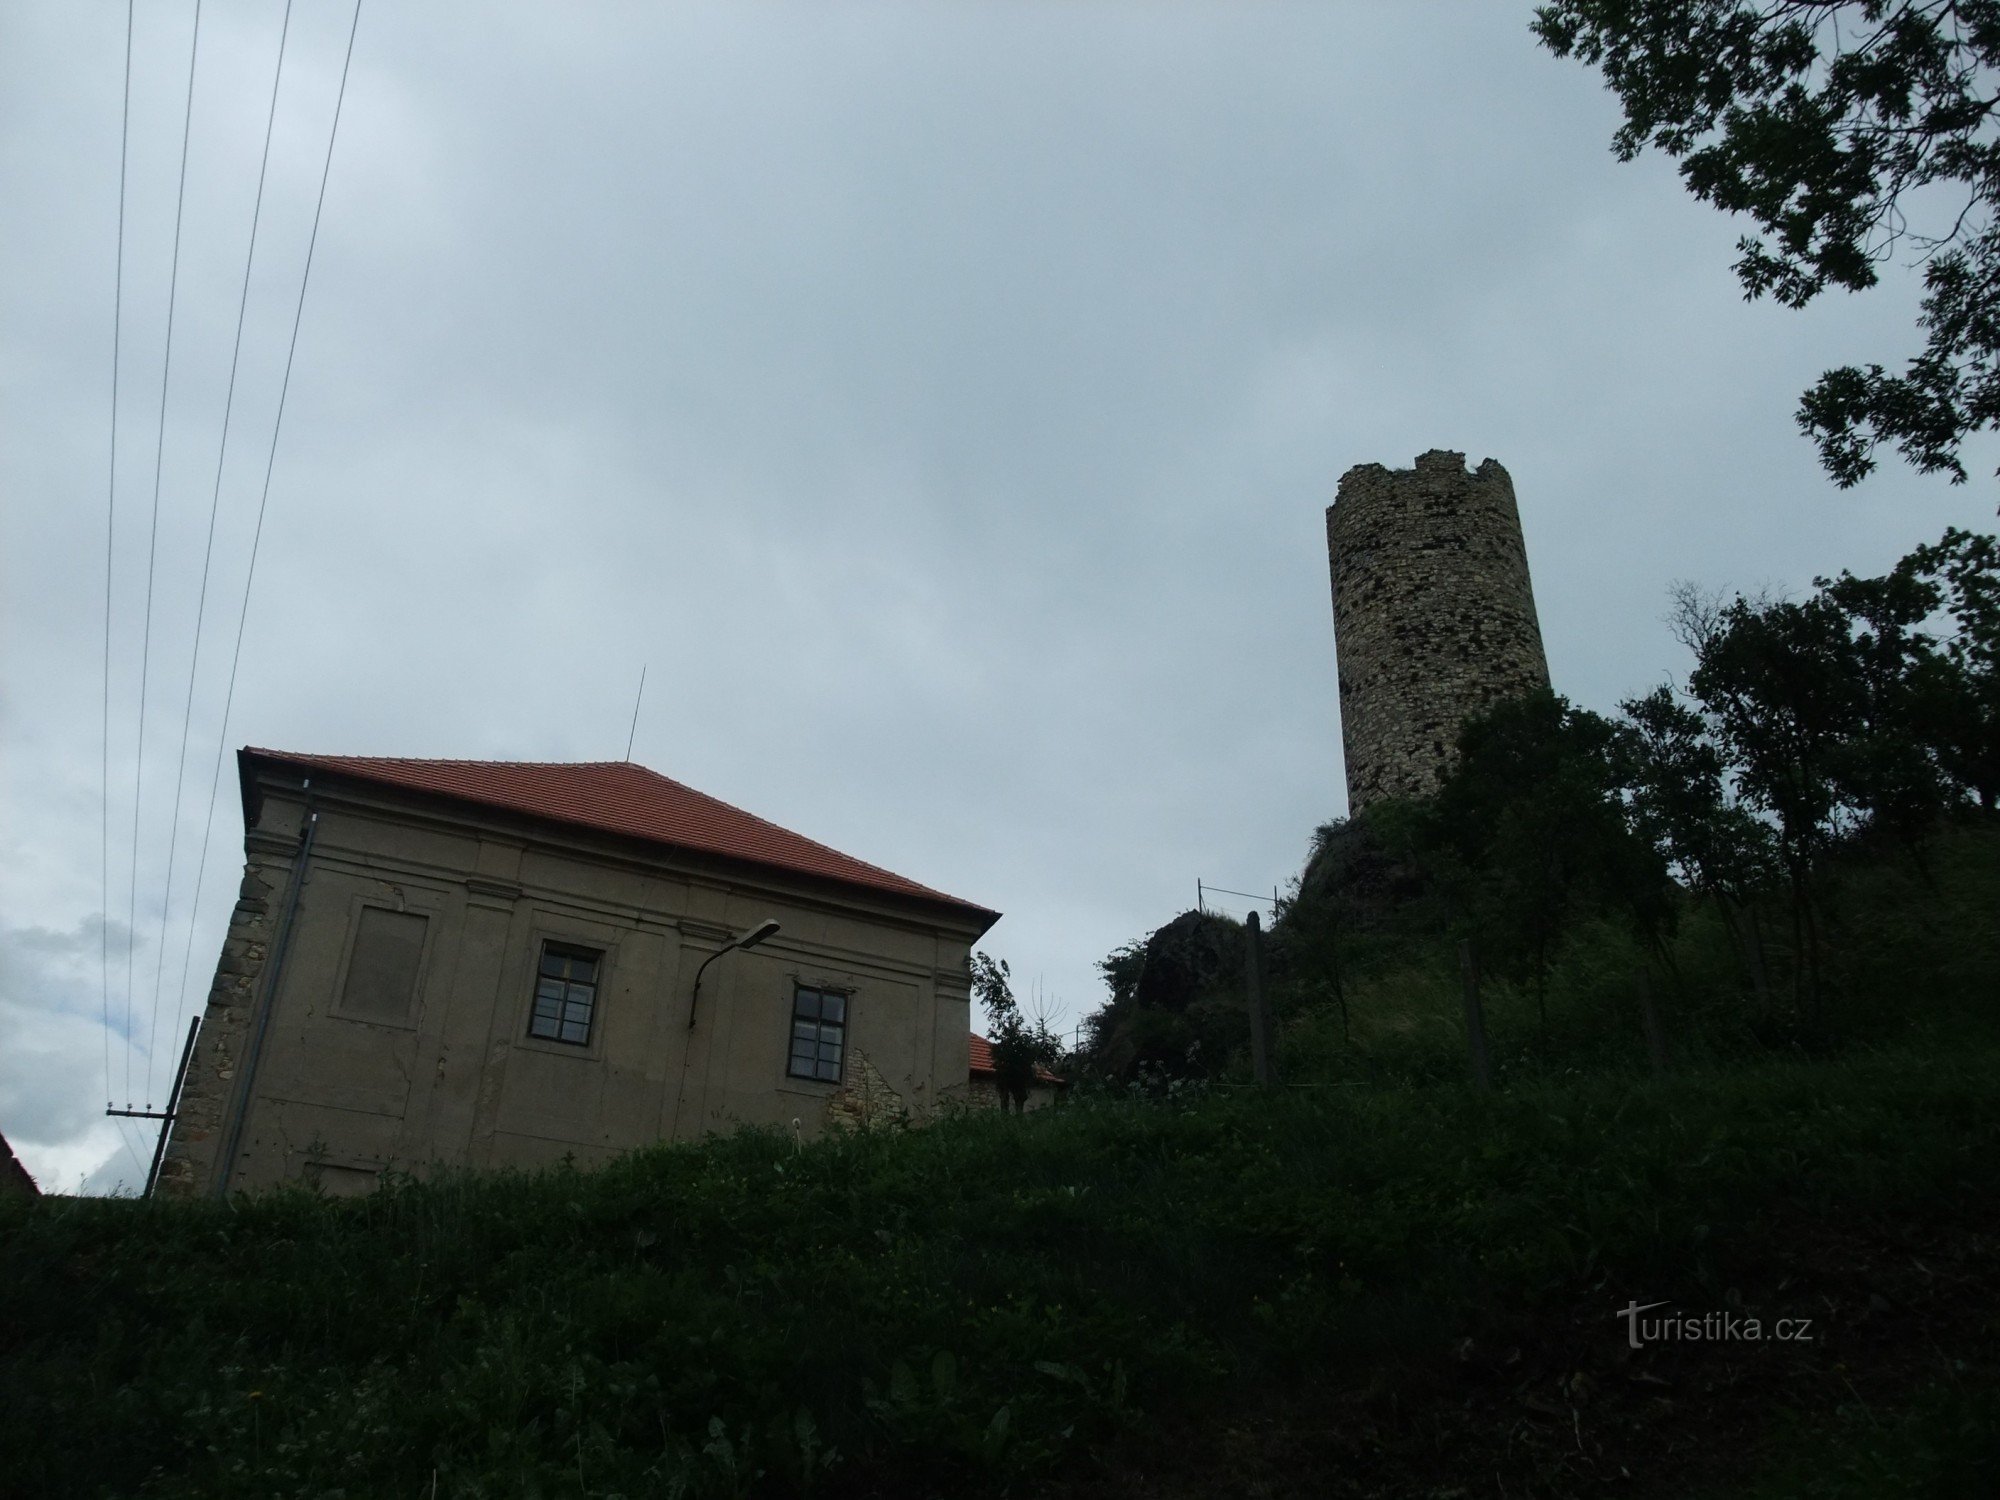 Τα ερείπια του Κάστρου Σκάλκα